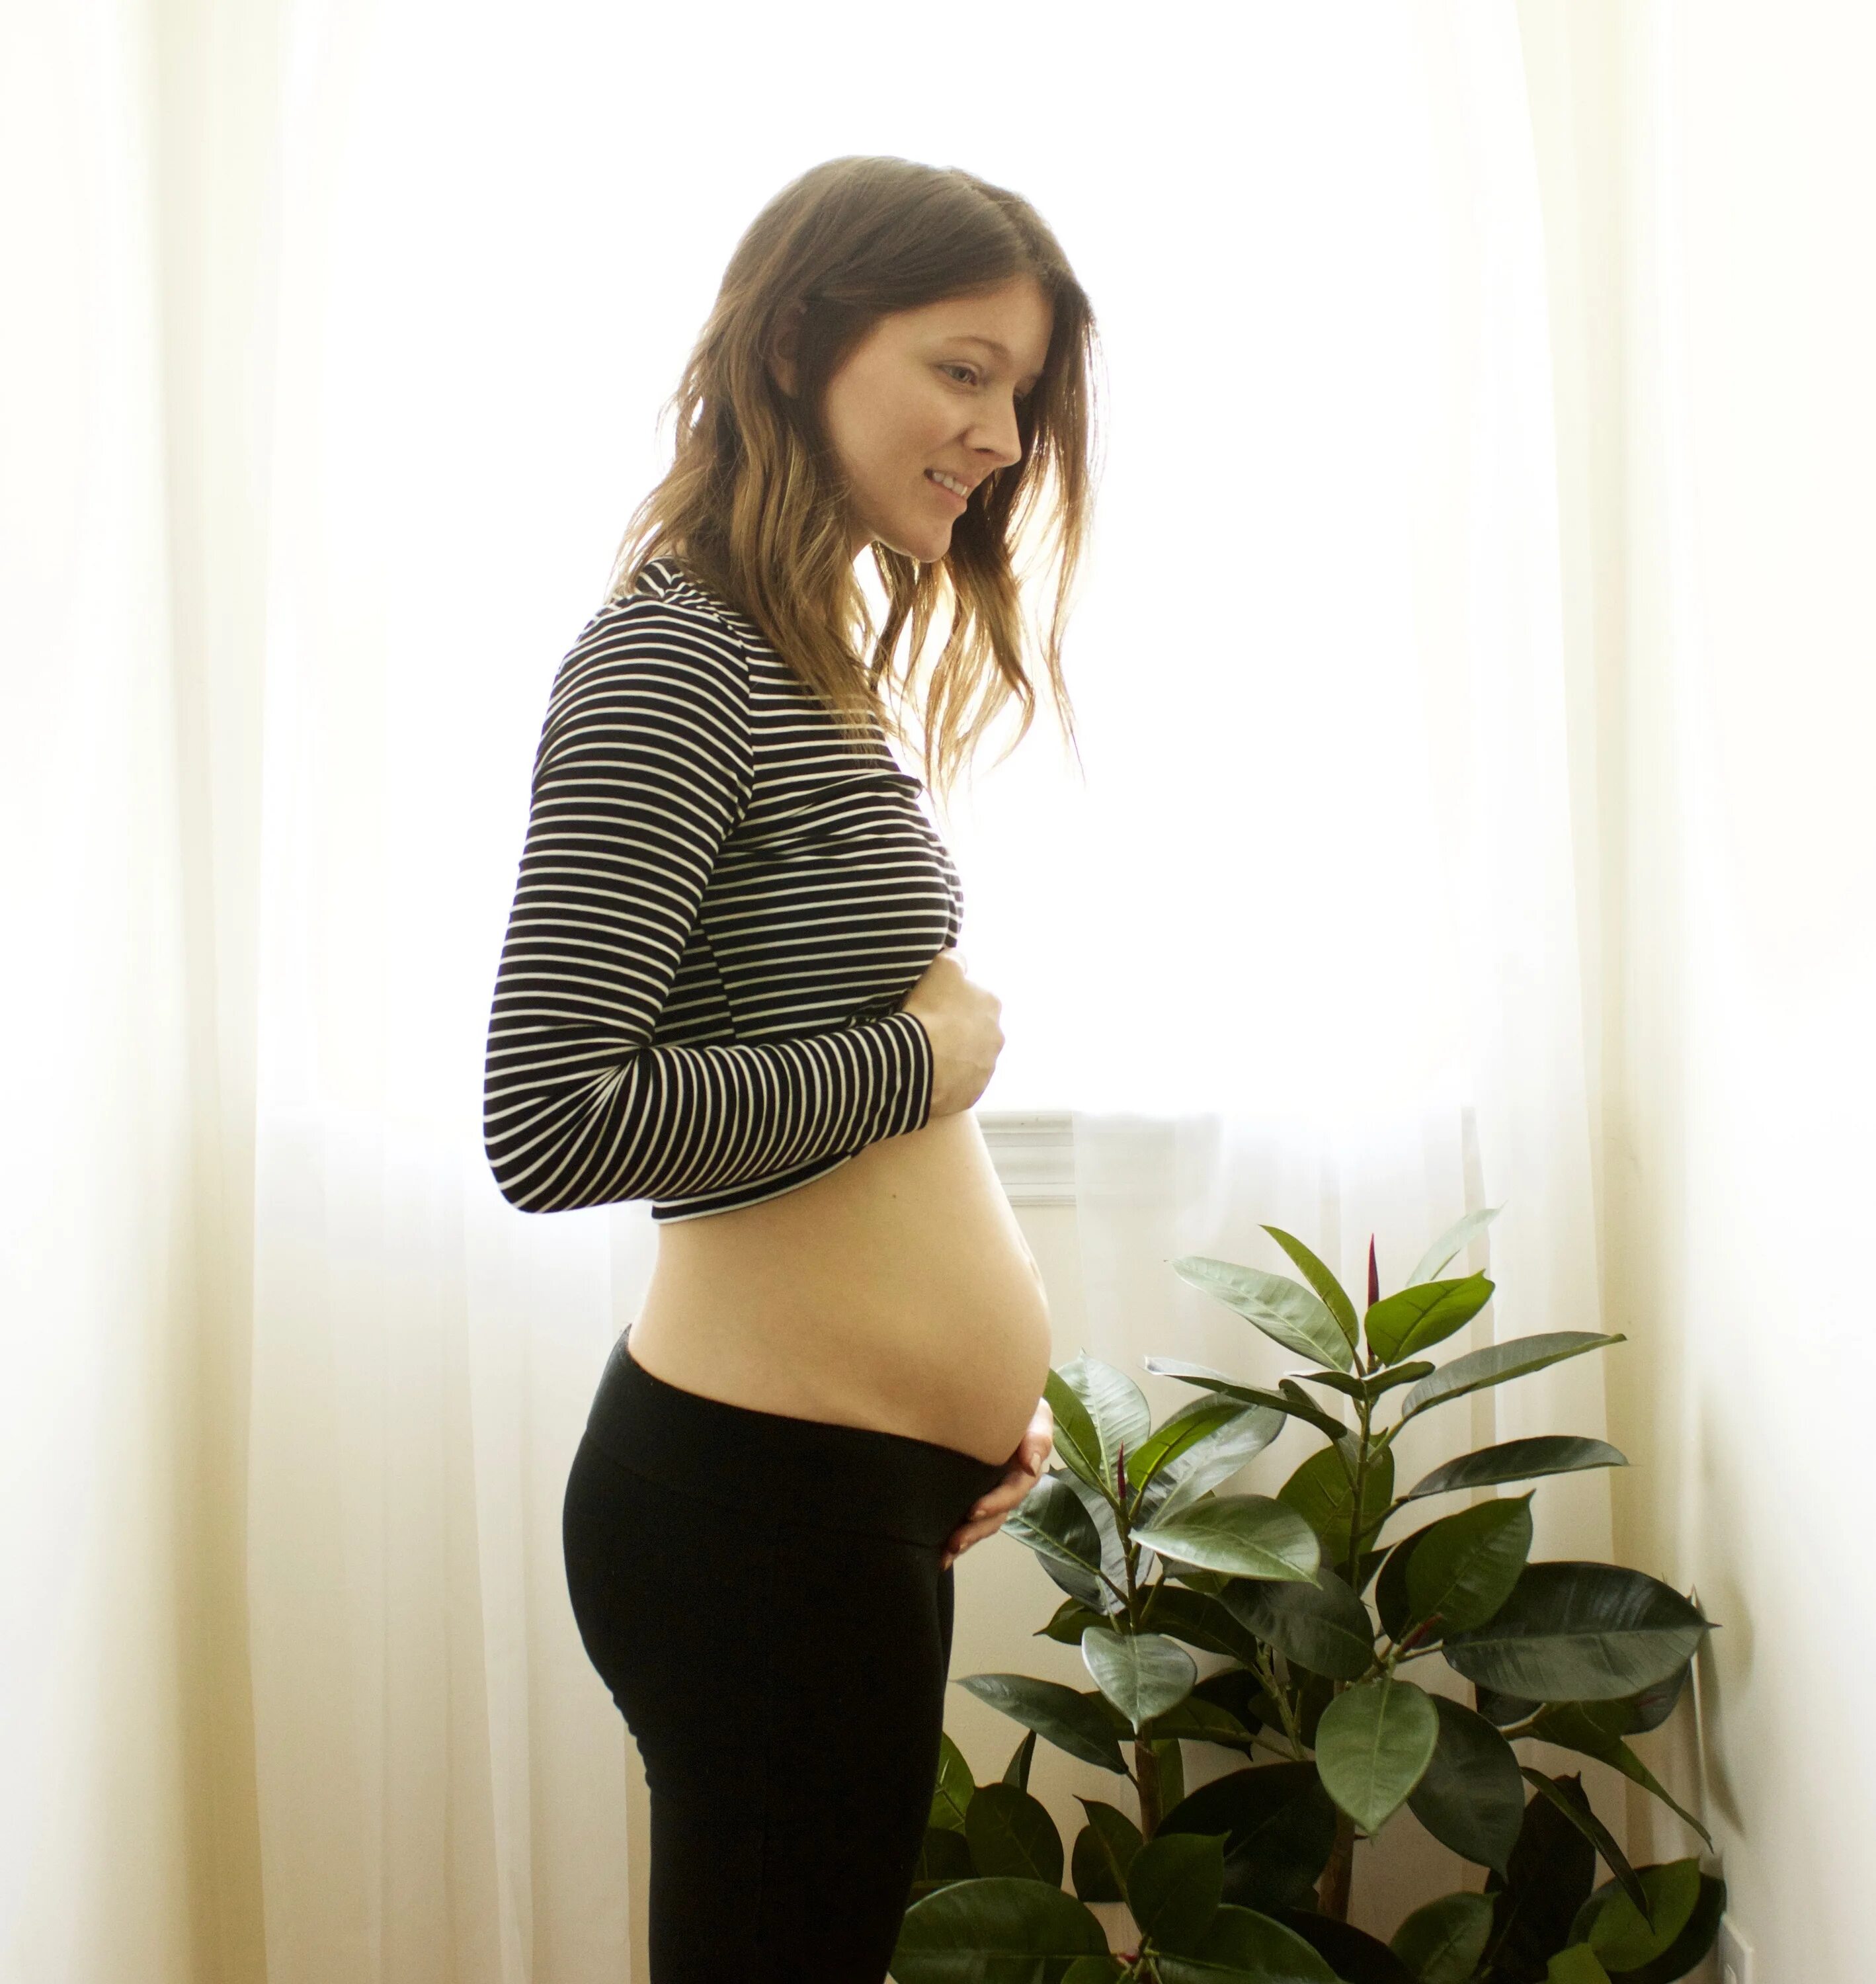 Pregnant belly 16 weeks. Pregnant 12 weeks. 3 Месяц беременности. 13 1 неделя беременности